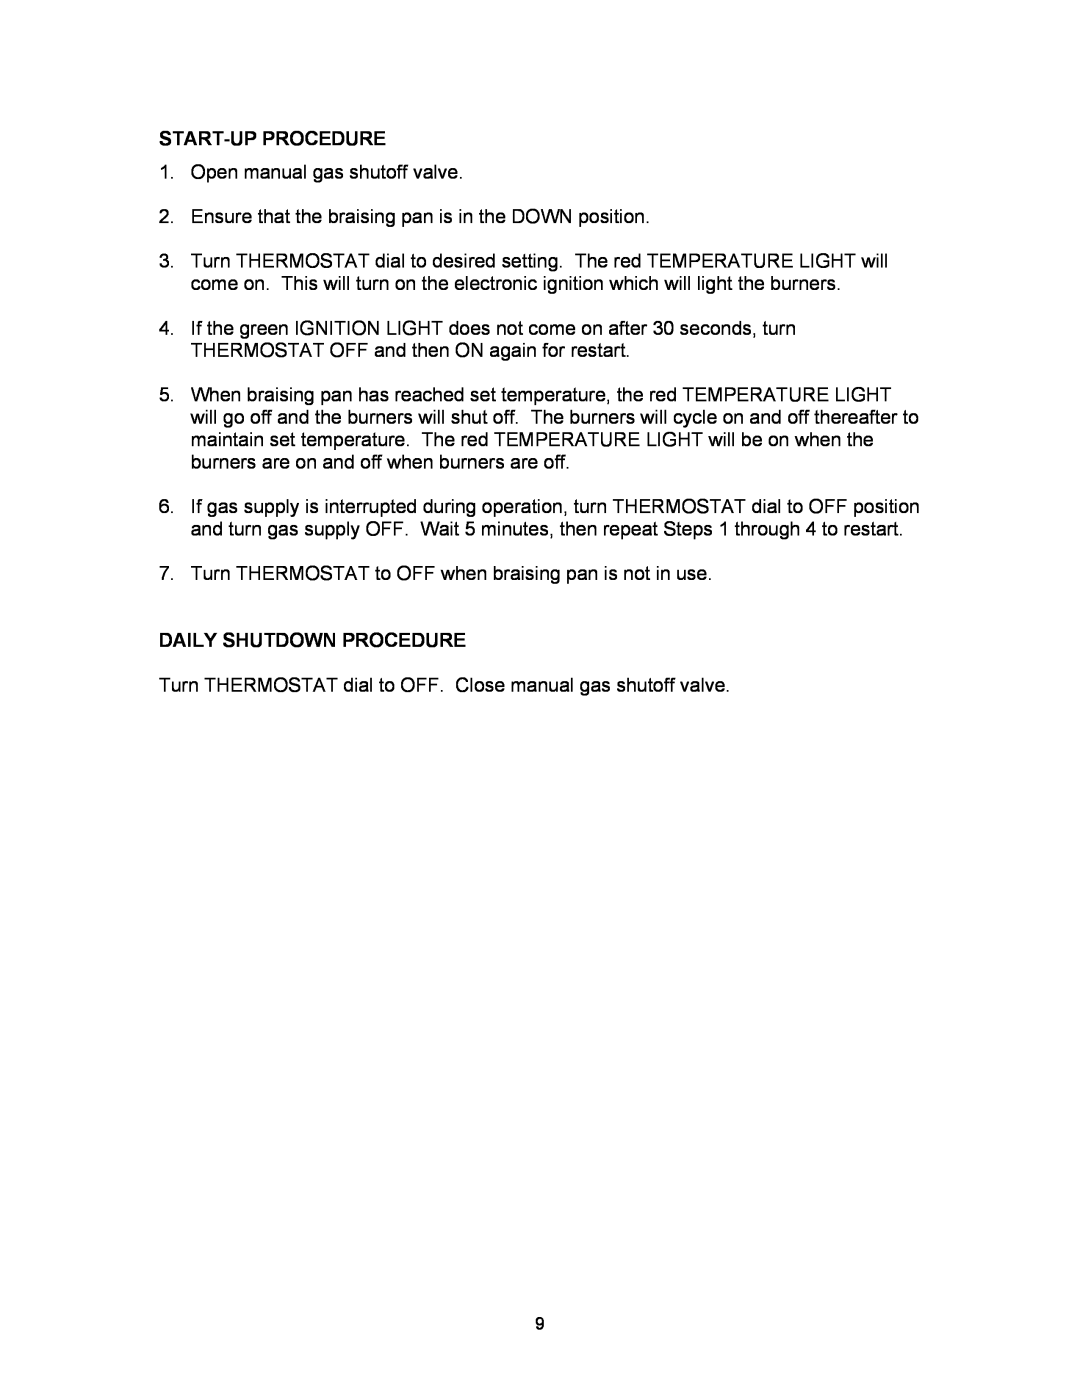 Blodgett BLP-40G manual Start-Up Procedure, Daily Shutdown Procedure 